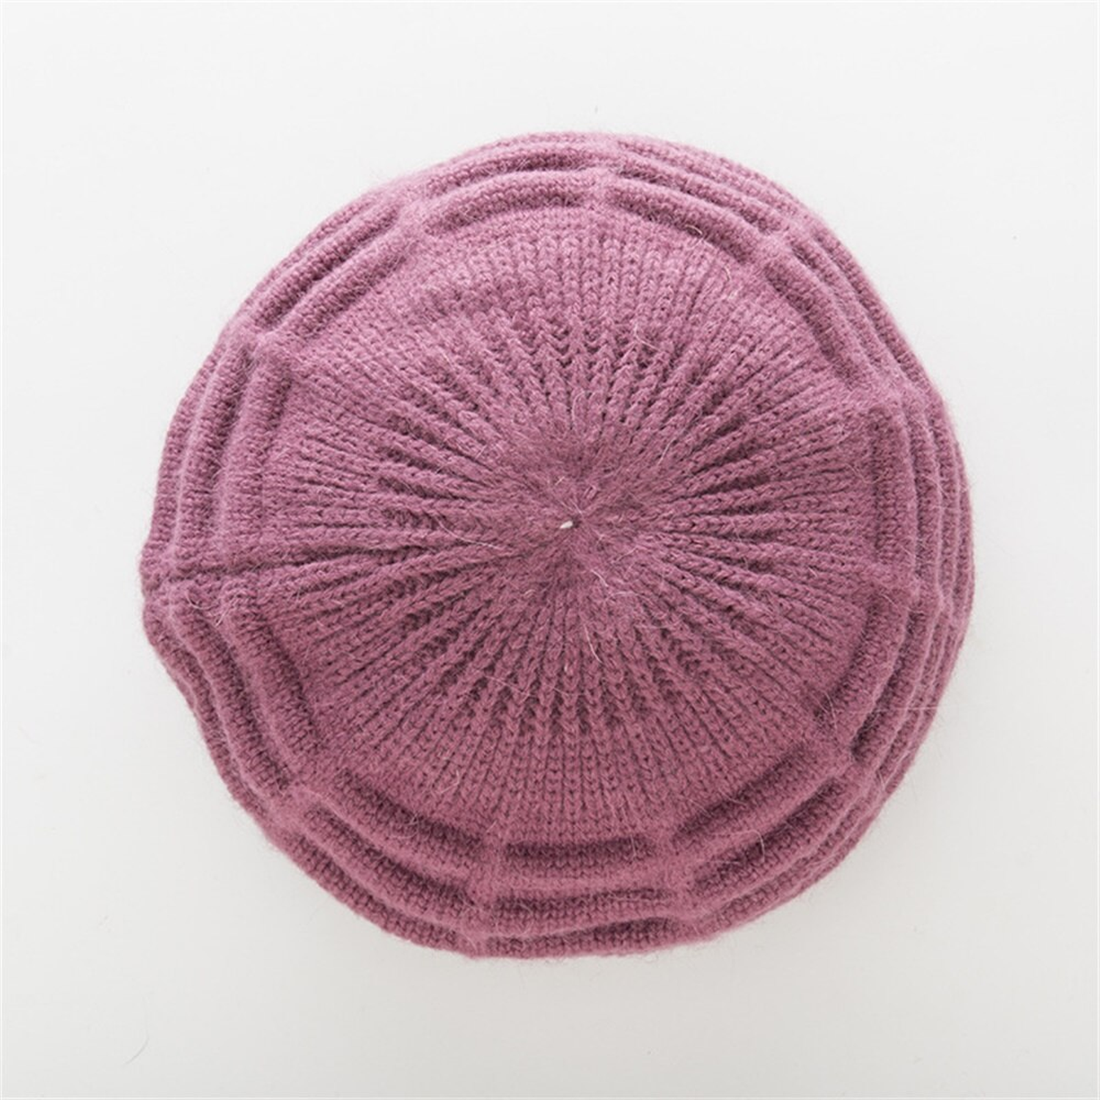 Women's Winter Casual Knitted Woolen Hat